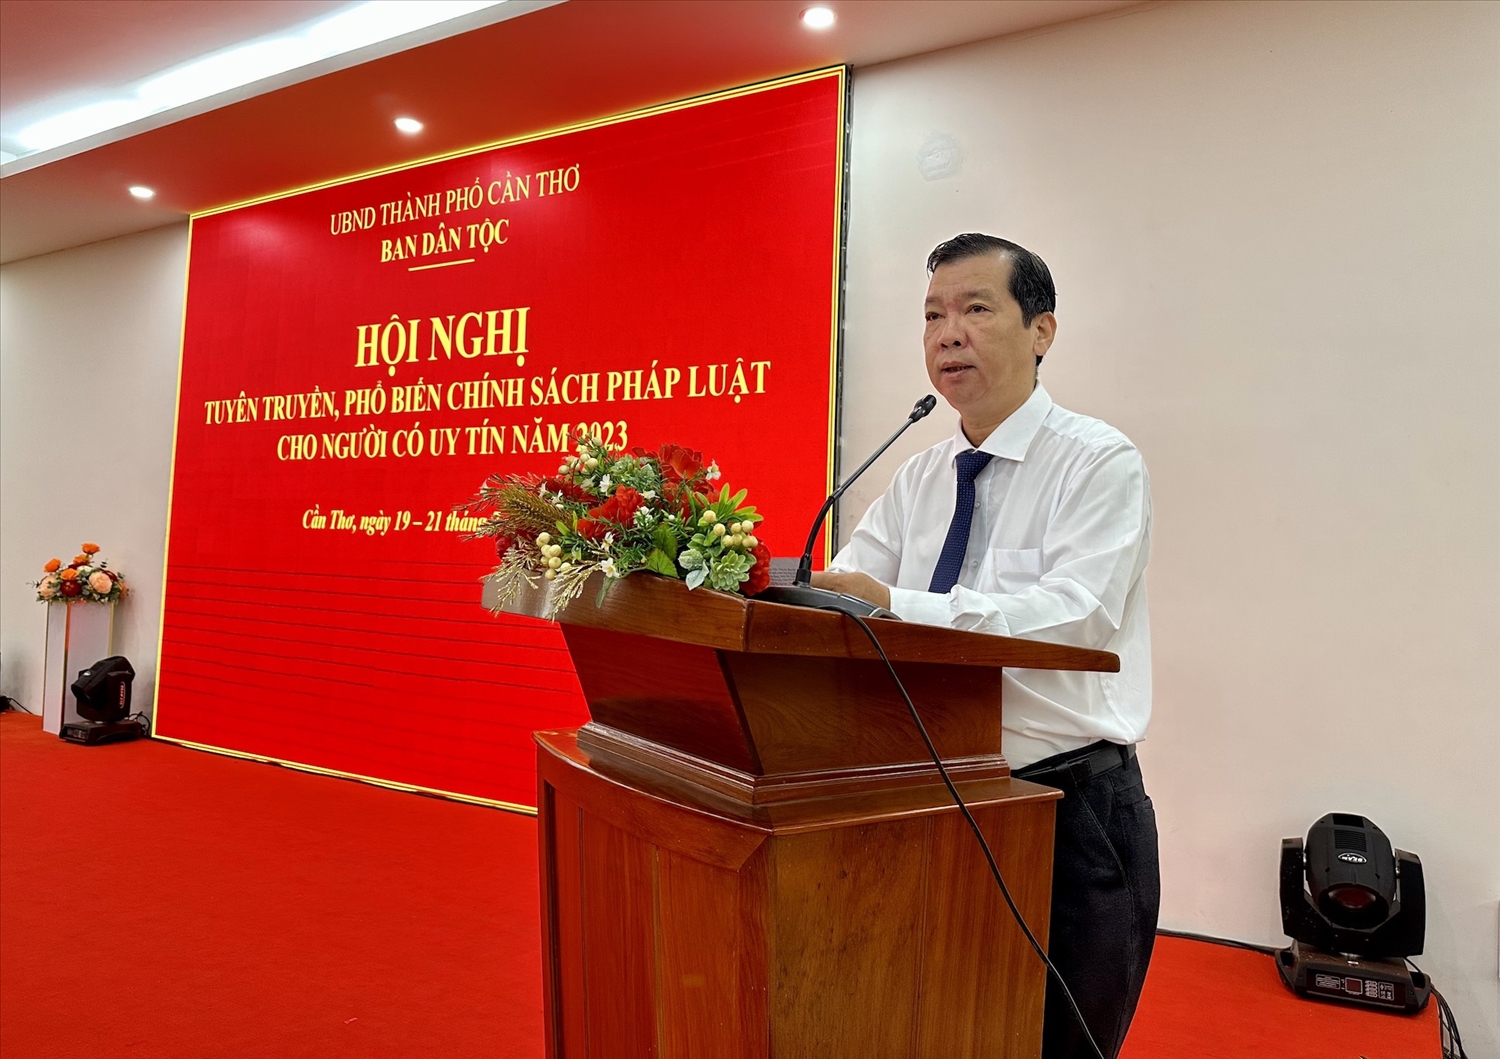 Ông Lê Trung Kiên, Trưởng Ban Dân tộc thành phố Cần Thơ phát biểu tại Hội nghị